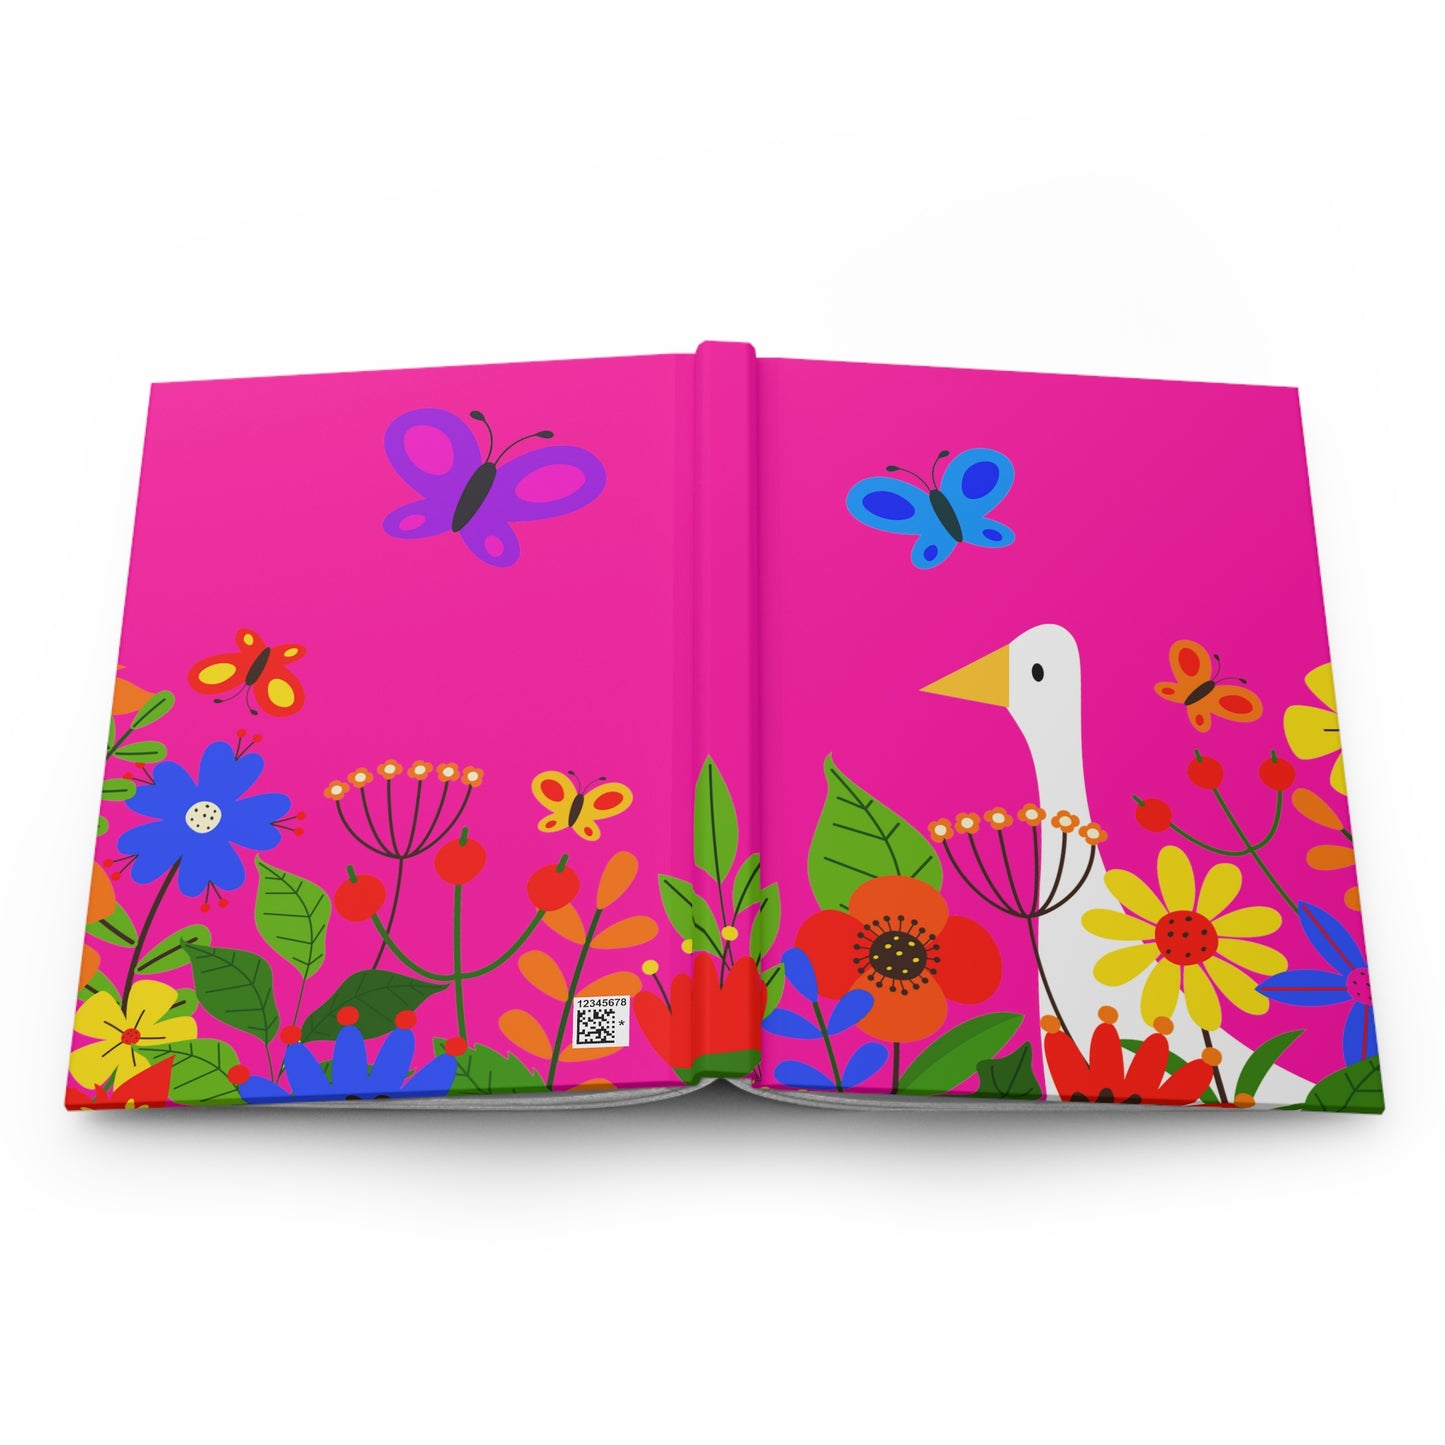 Bright Summer flowers - Mean Girls Lipstick ff00a8 - Hardcover Journal Matte